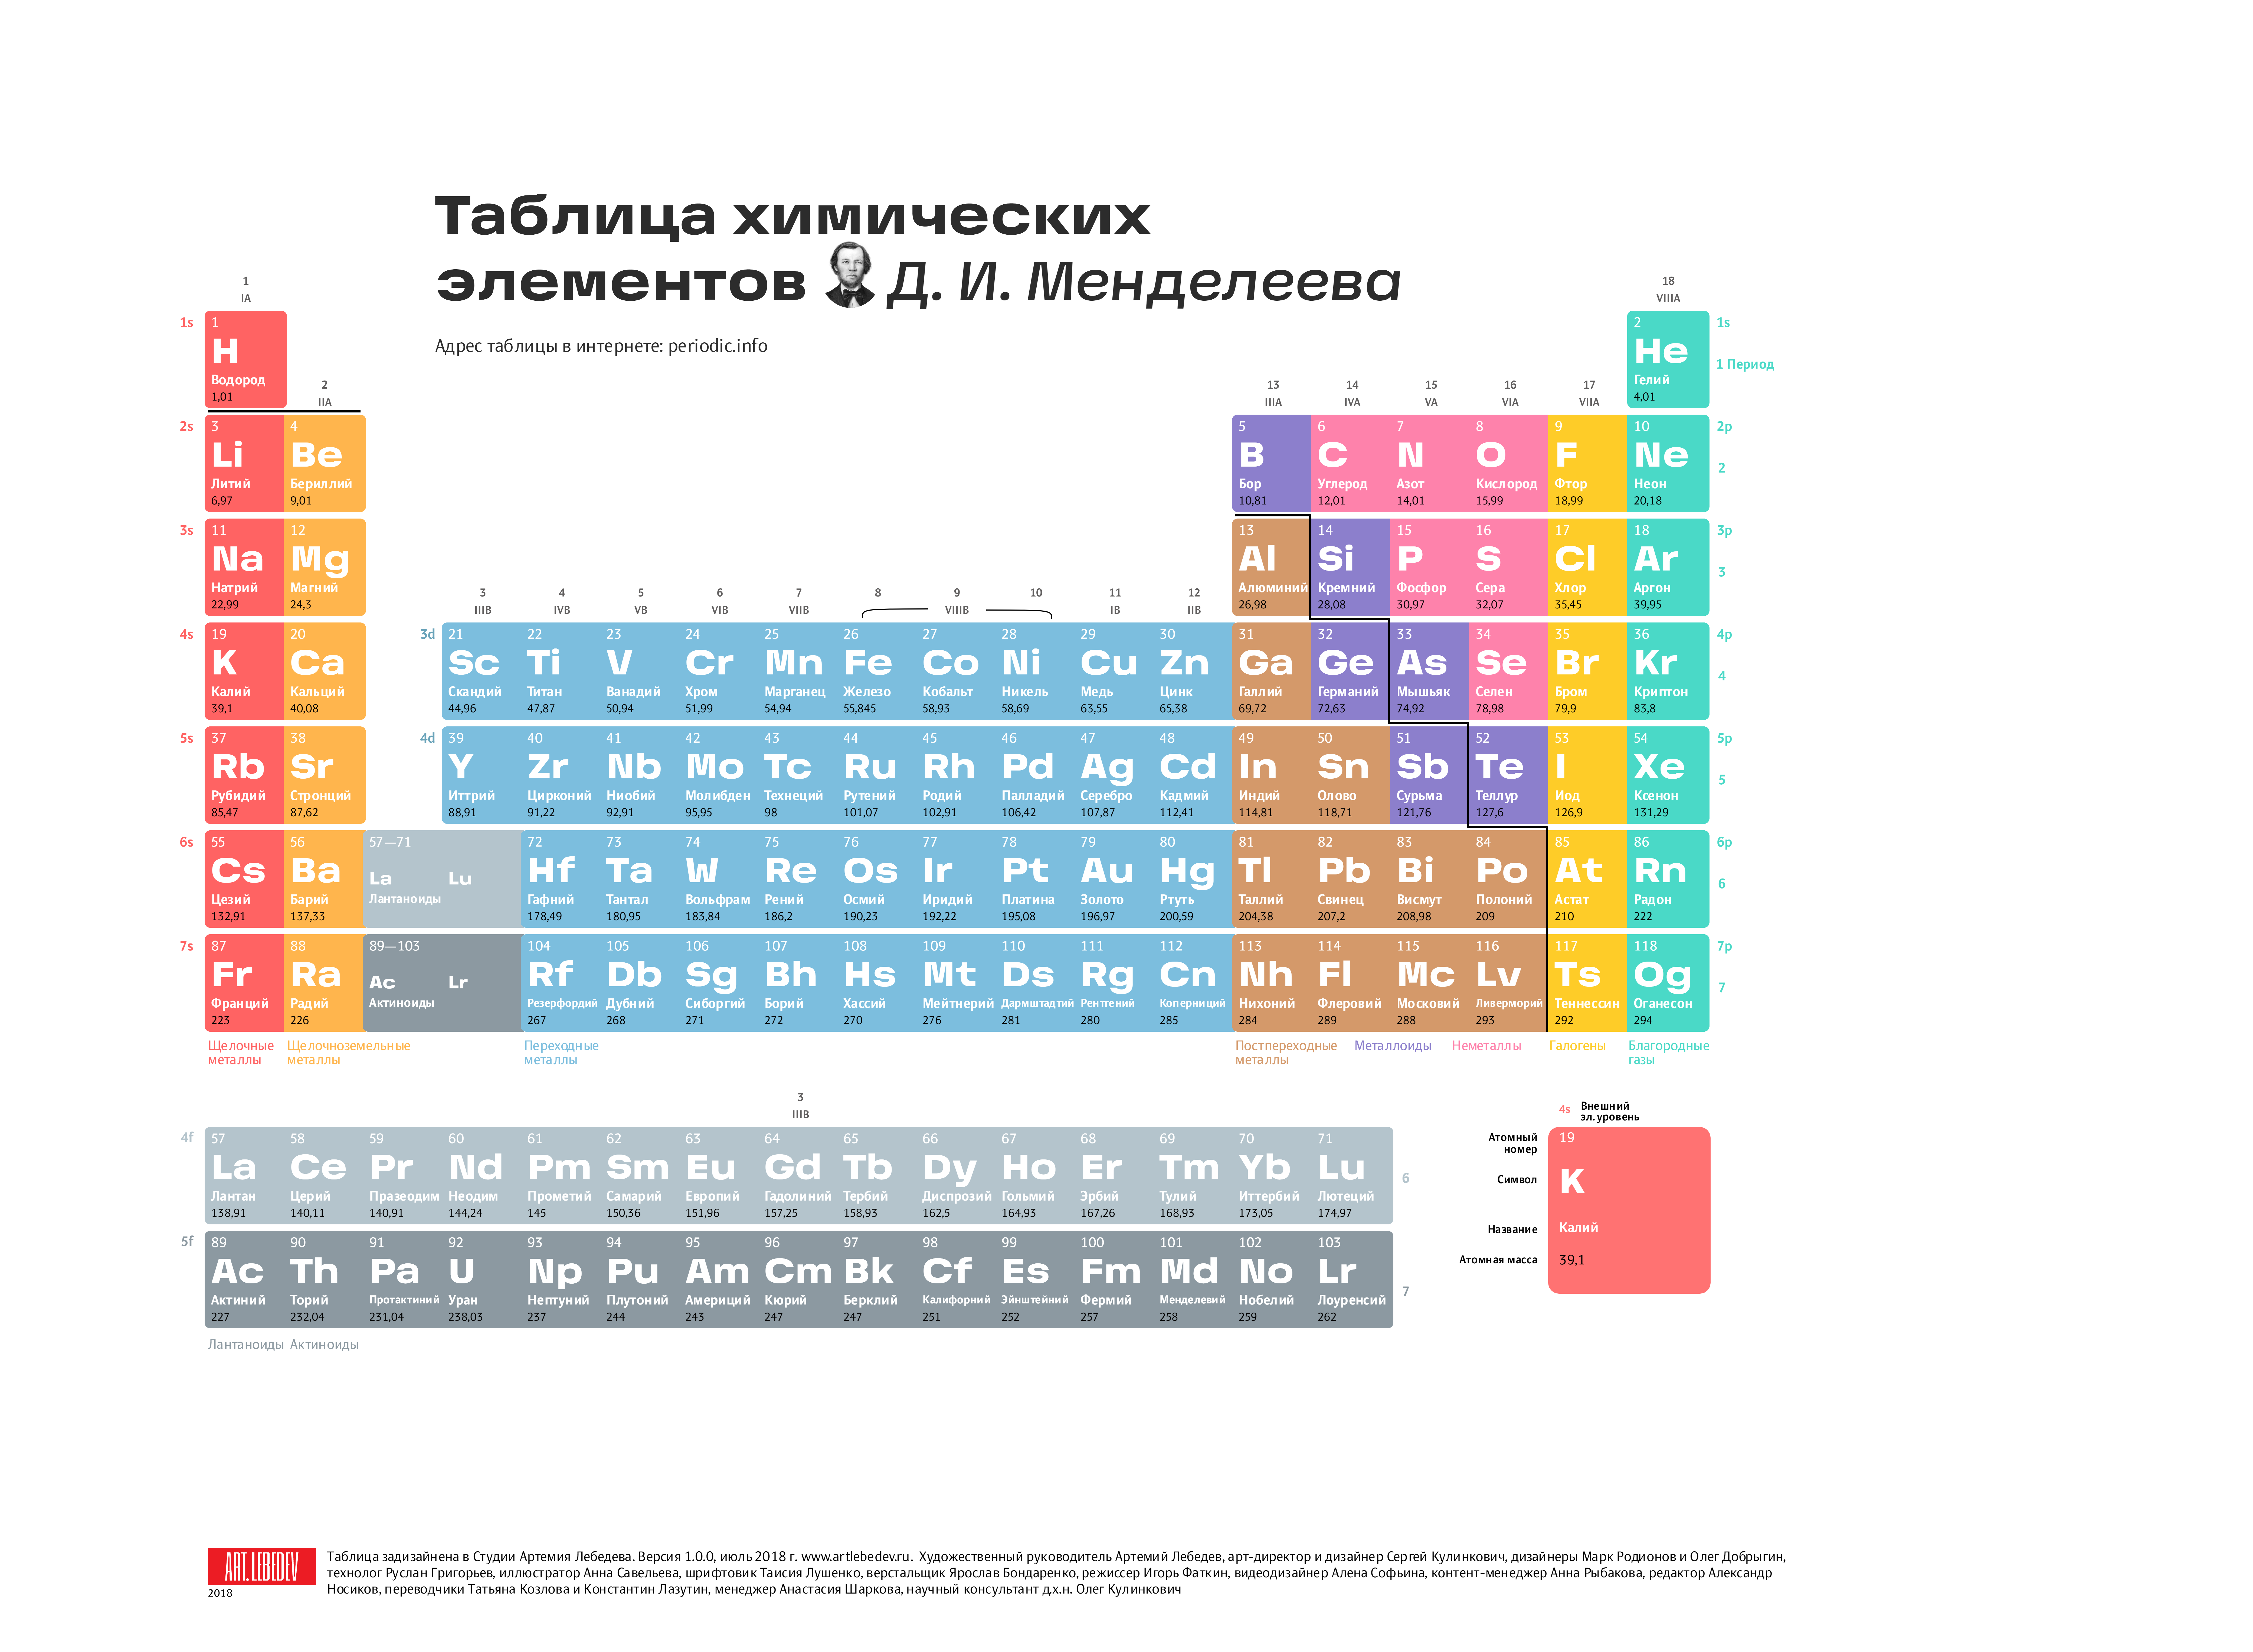 Сколько новых элементов таблицы. Современная таблица Менделеева 118 элементов. Длиннопериодный вариант таблицы Менделеева. Первые 20 элементов таблицы Менделеева. Химия просто таблица Менделеева 2.0.